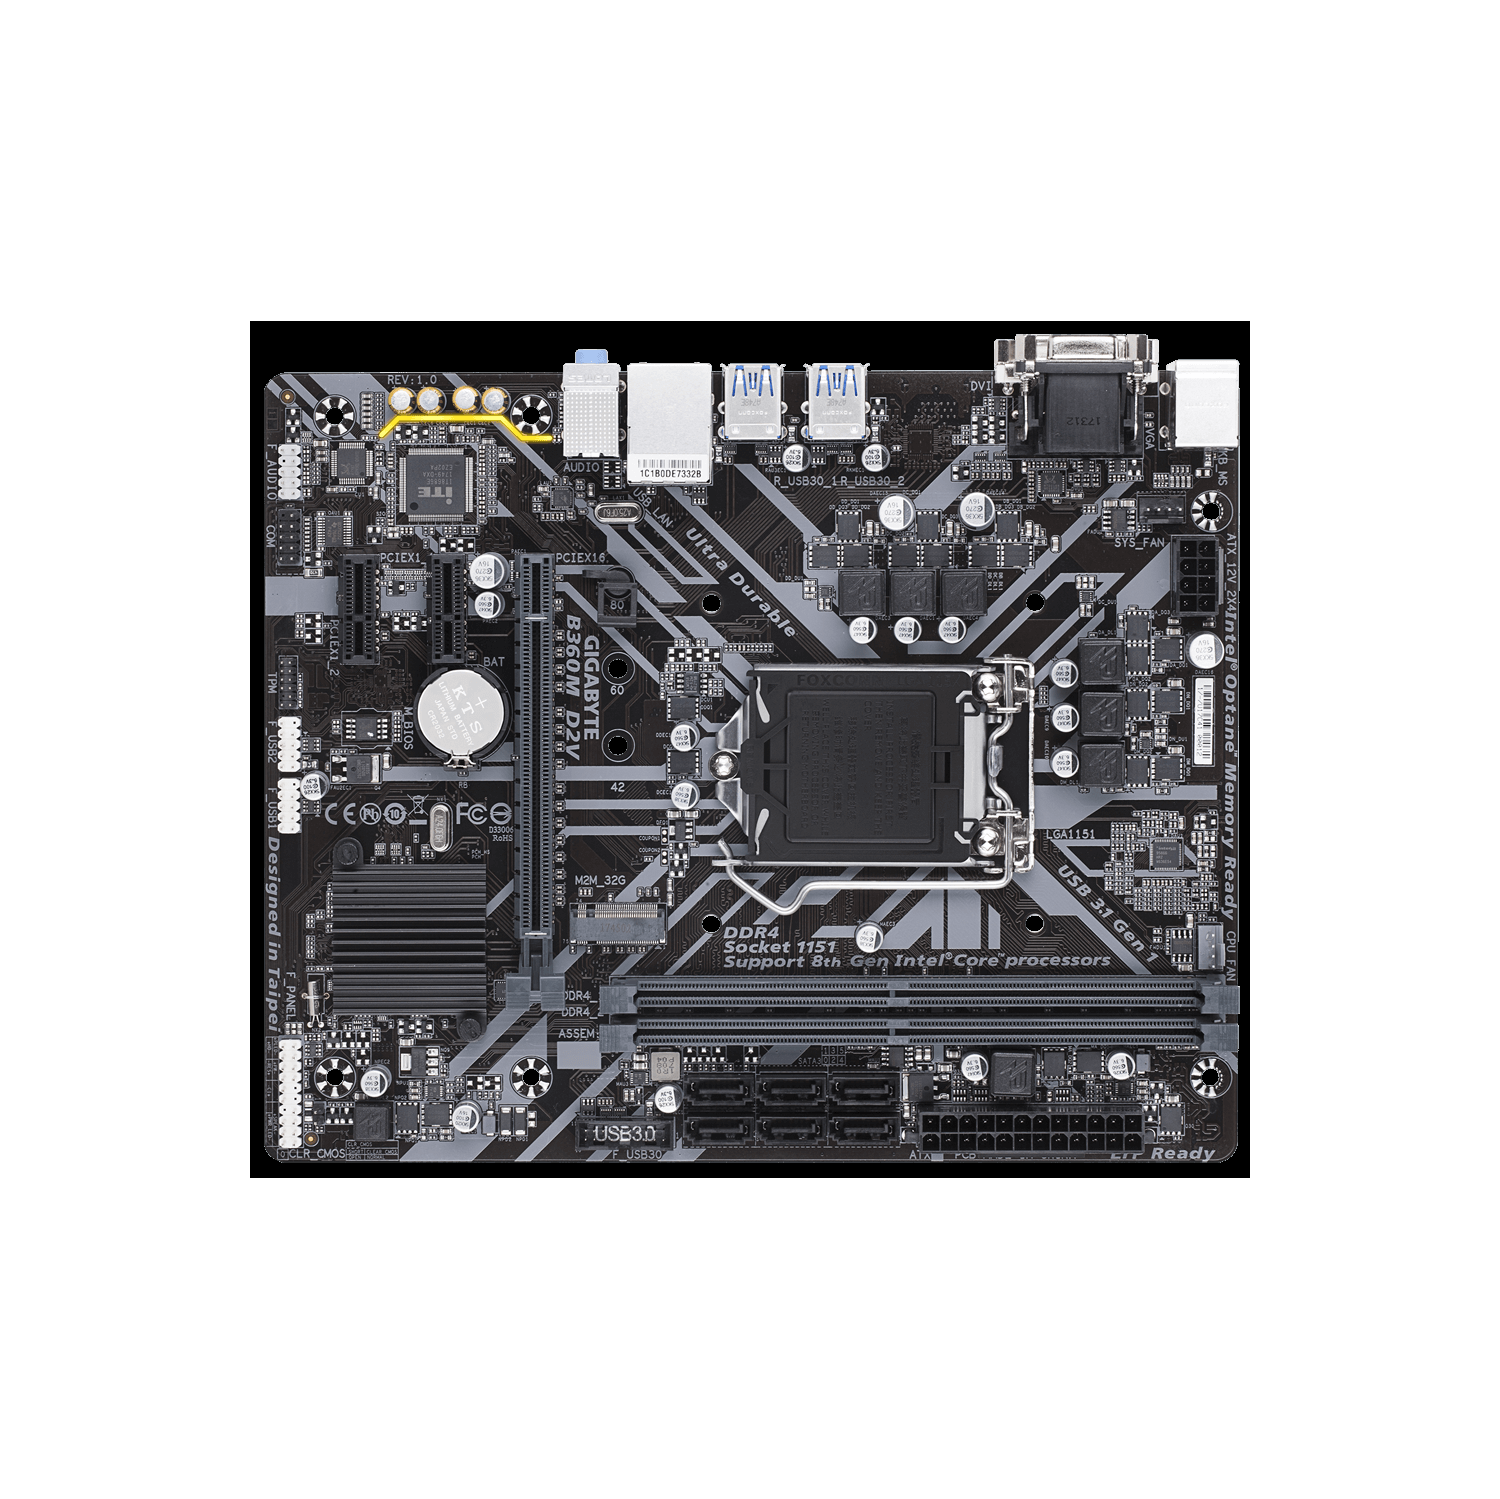 Refurbished (Excellent) - Gigabyte B360M D2V REV 1.0 Motherboard Used with Panel Socket 1151 8/9th